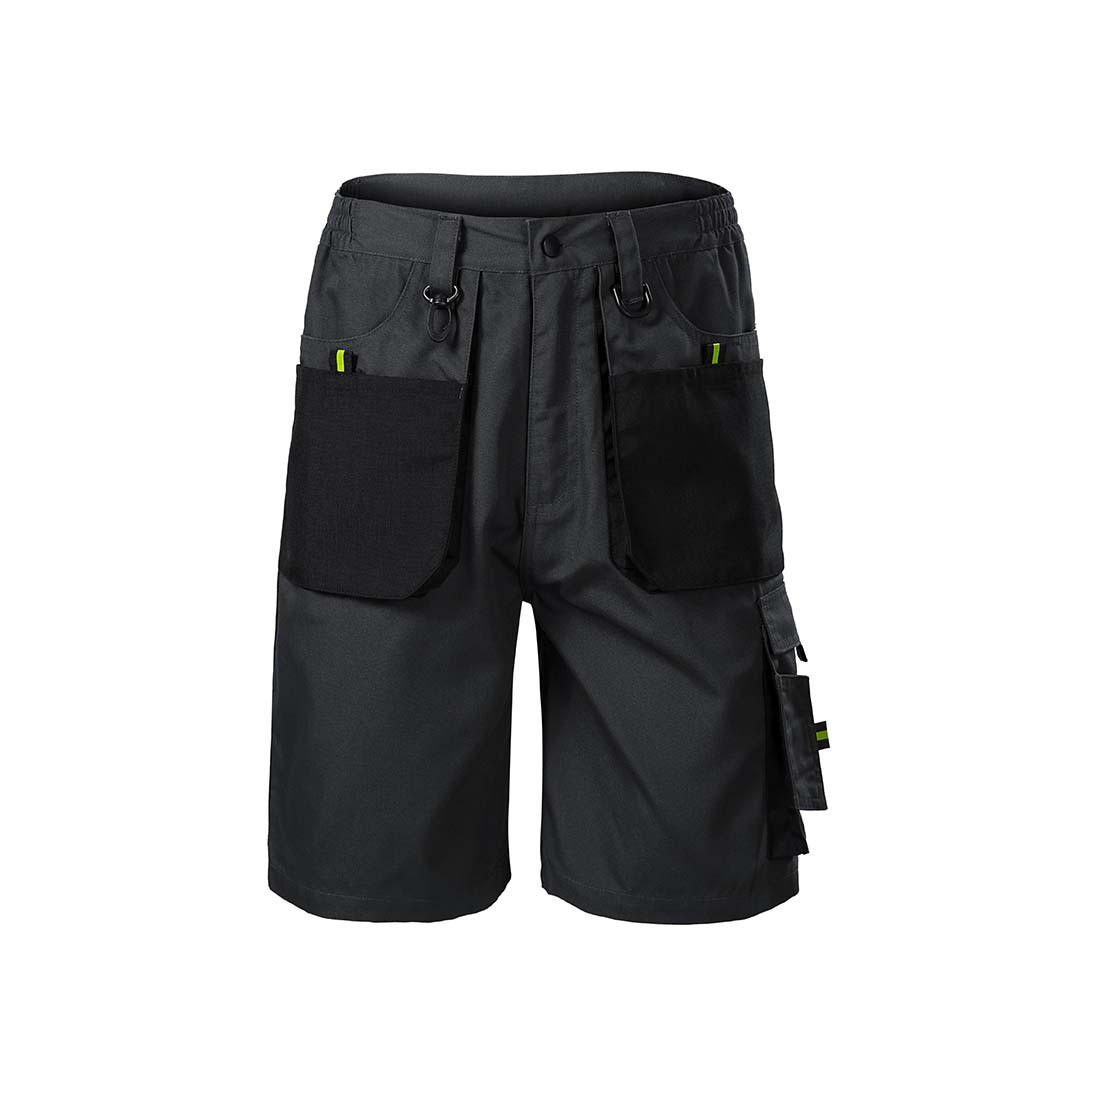 RANGER Men's Work Shorts - Safetywear